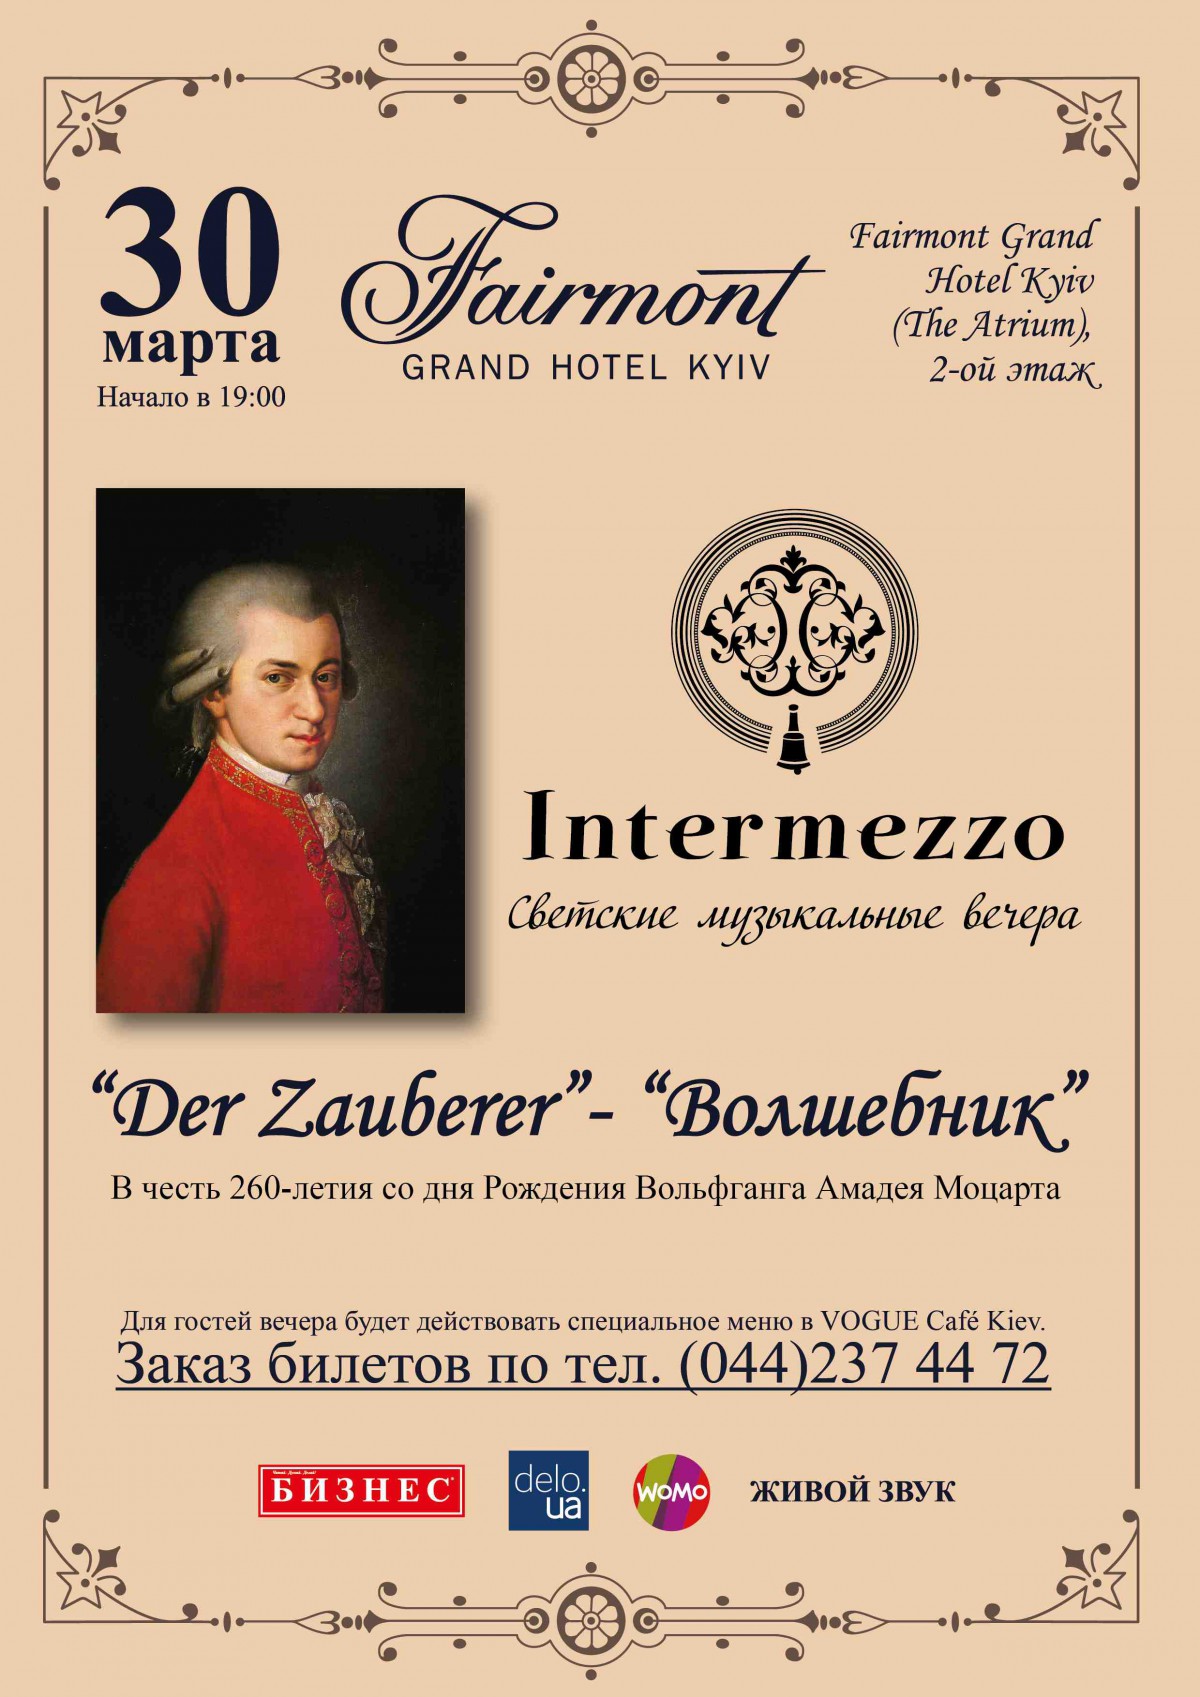 «Intermezzo. Светские музыкальные вечера» снова в Fairmont Grand Hotel Kiev!